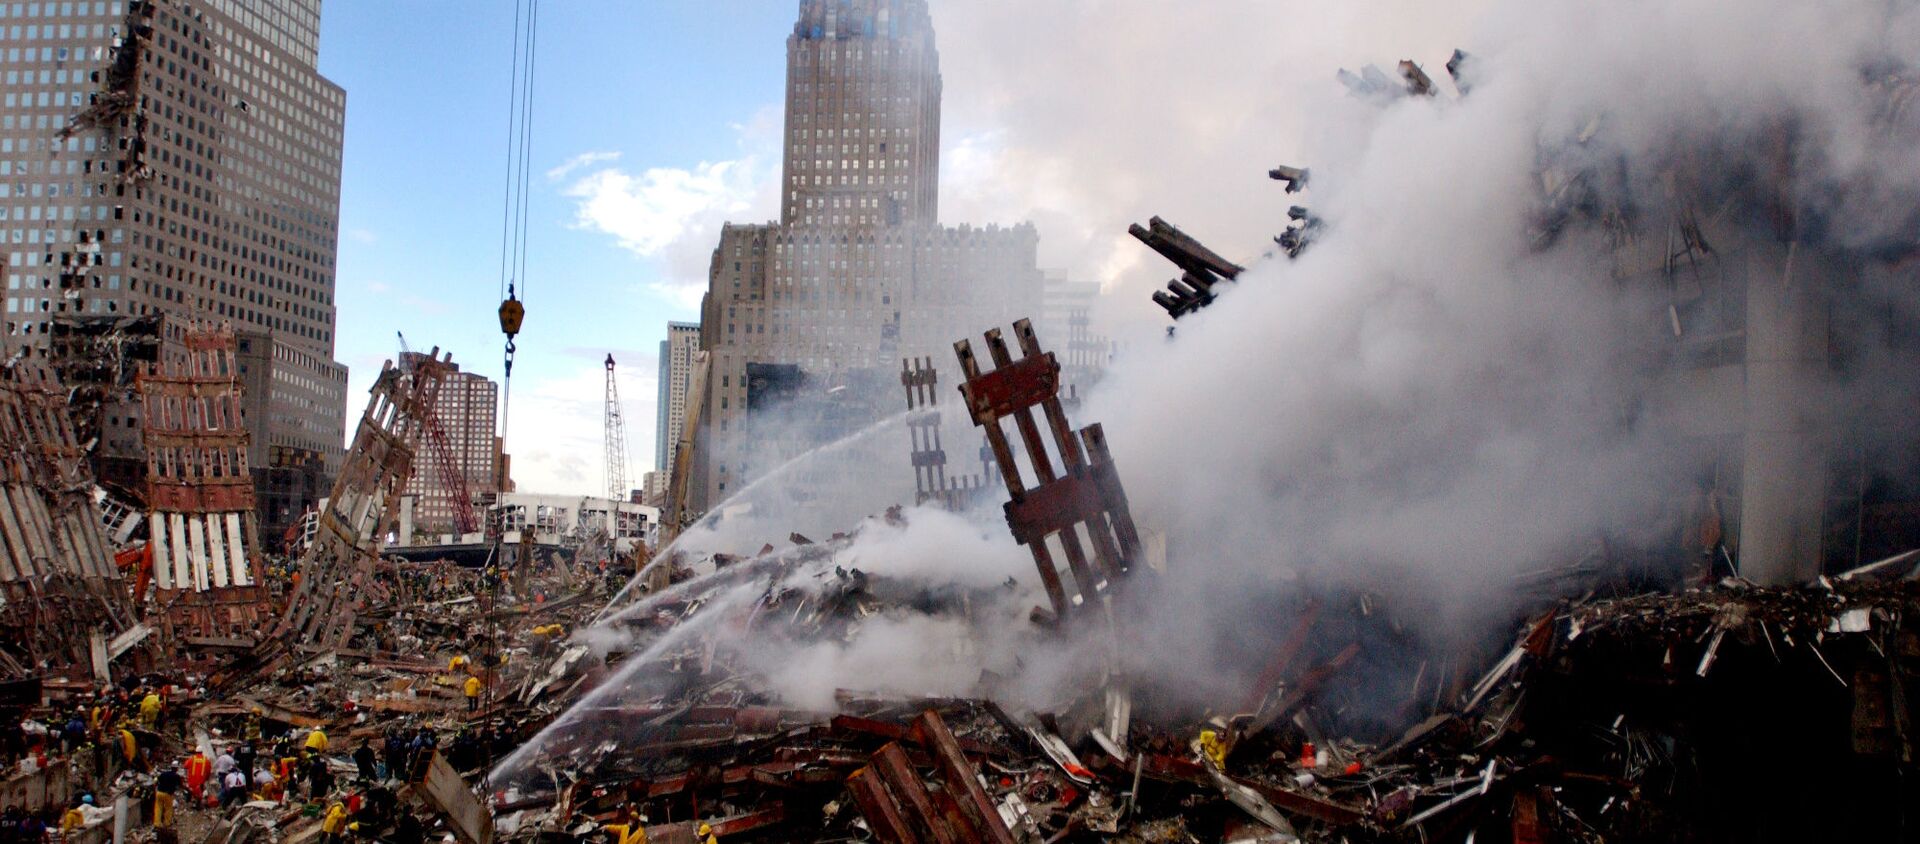 Тушение пожара на месте атакованного Всемирного торгового центра 11 сентября в Нью-Йорке  - Sputnik Абхазия, 1920, 12.09.2021